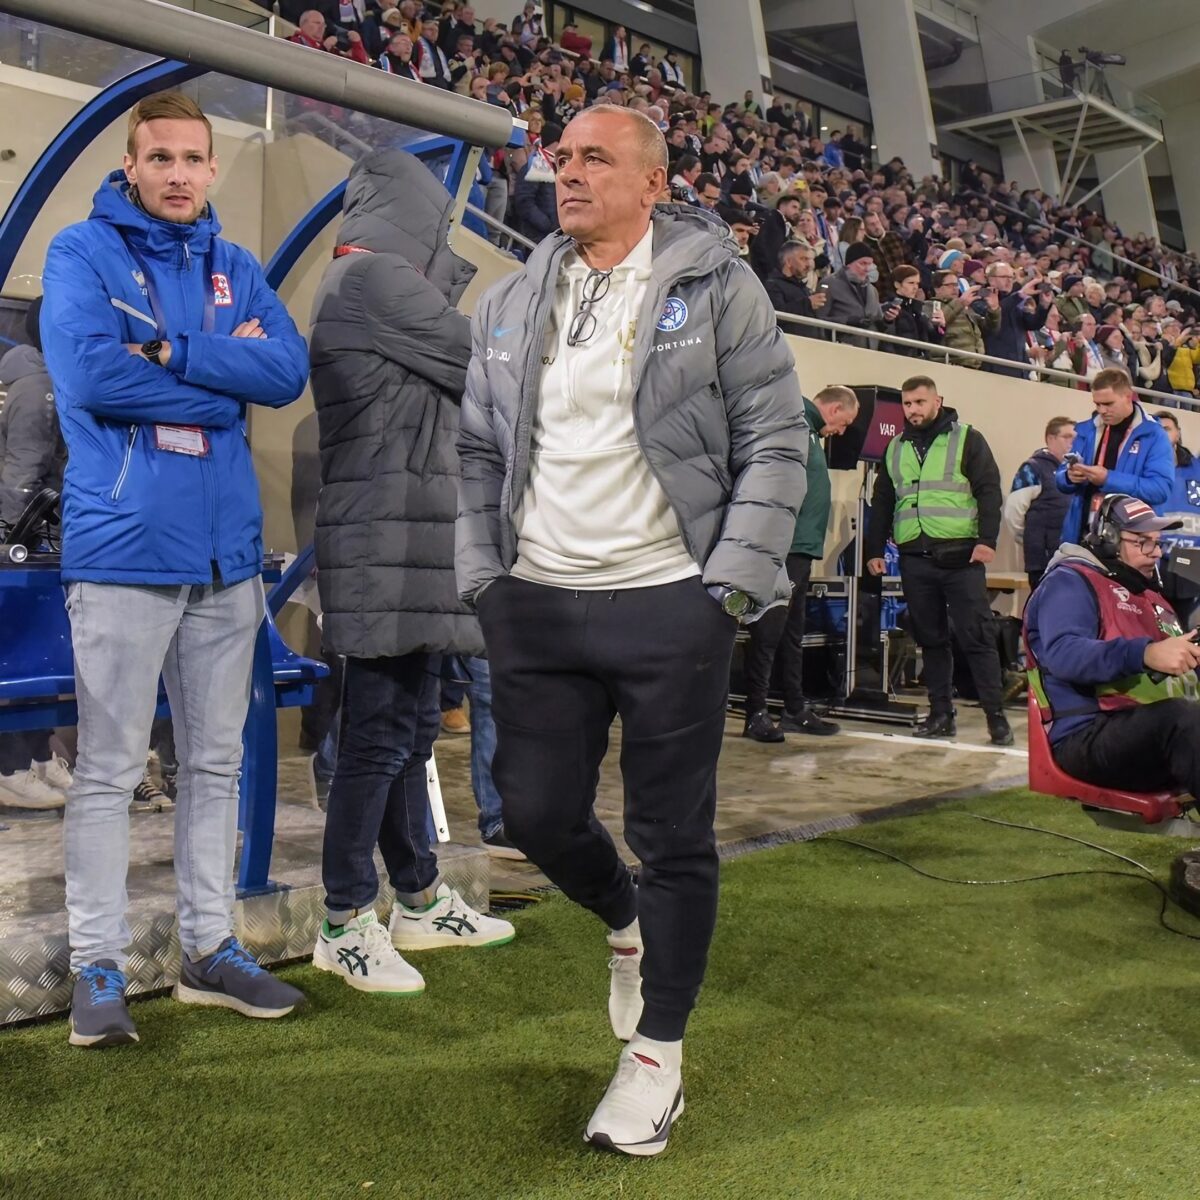 SSC Napoli y Ciccio Calzona, nuevo entrenador en lugar de Mazzarri